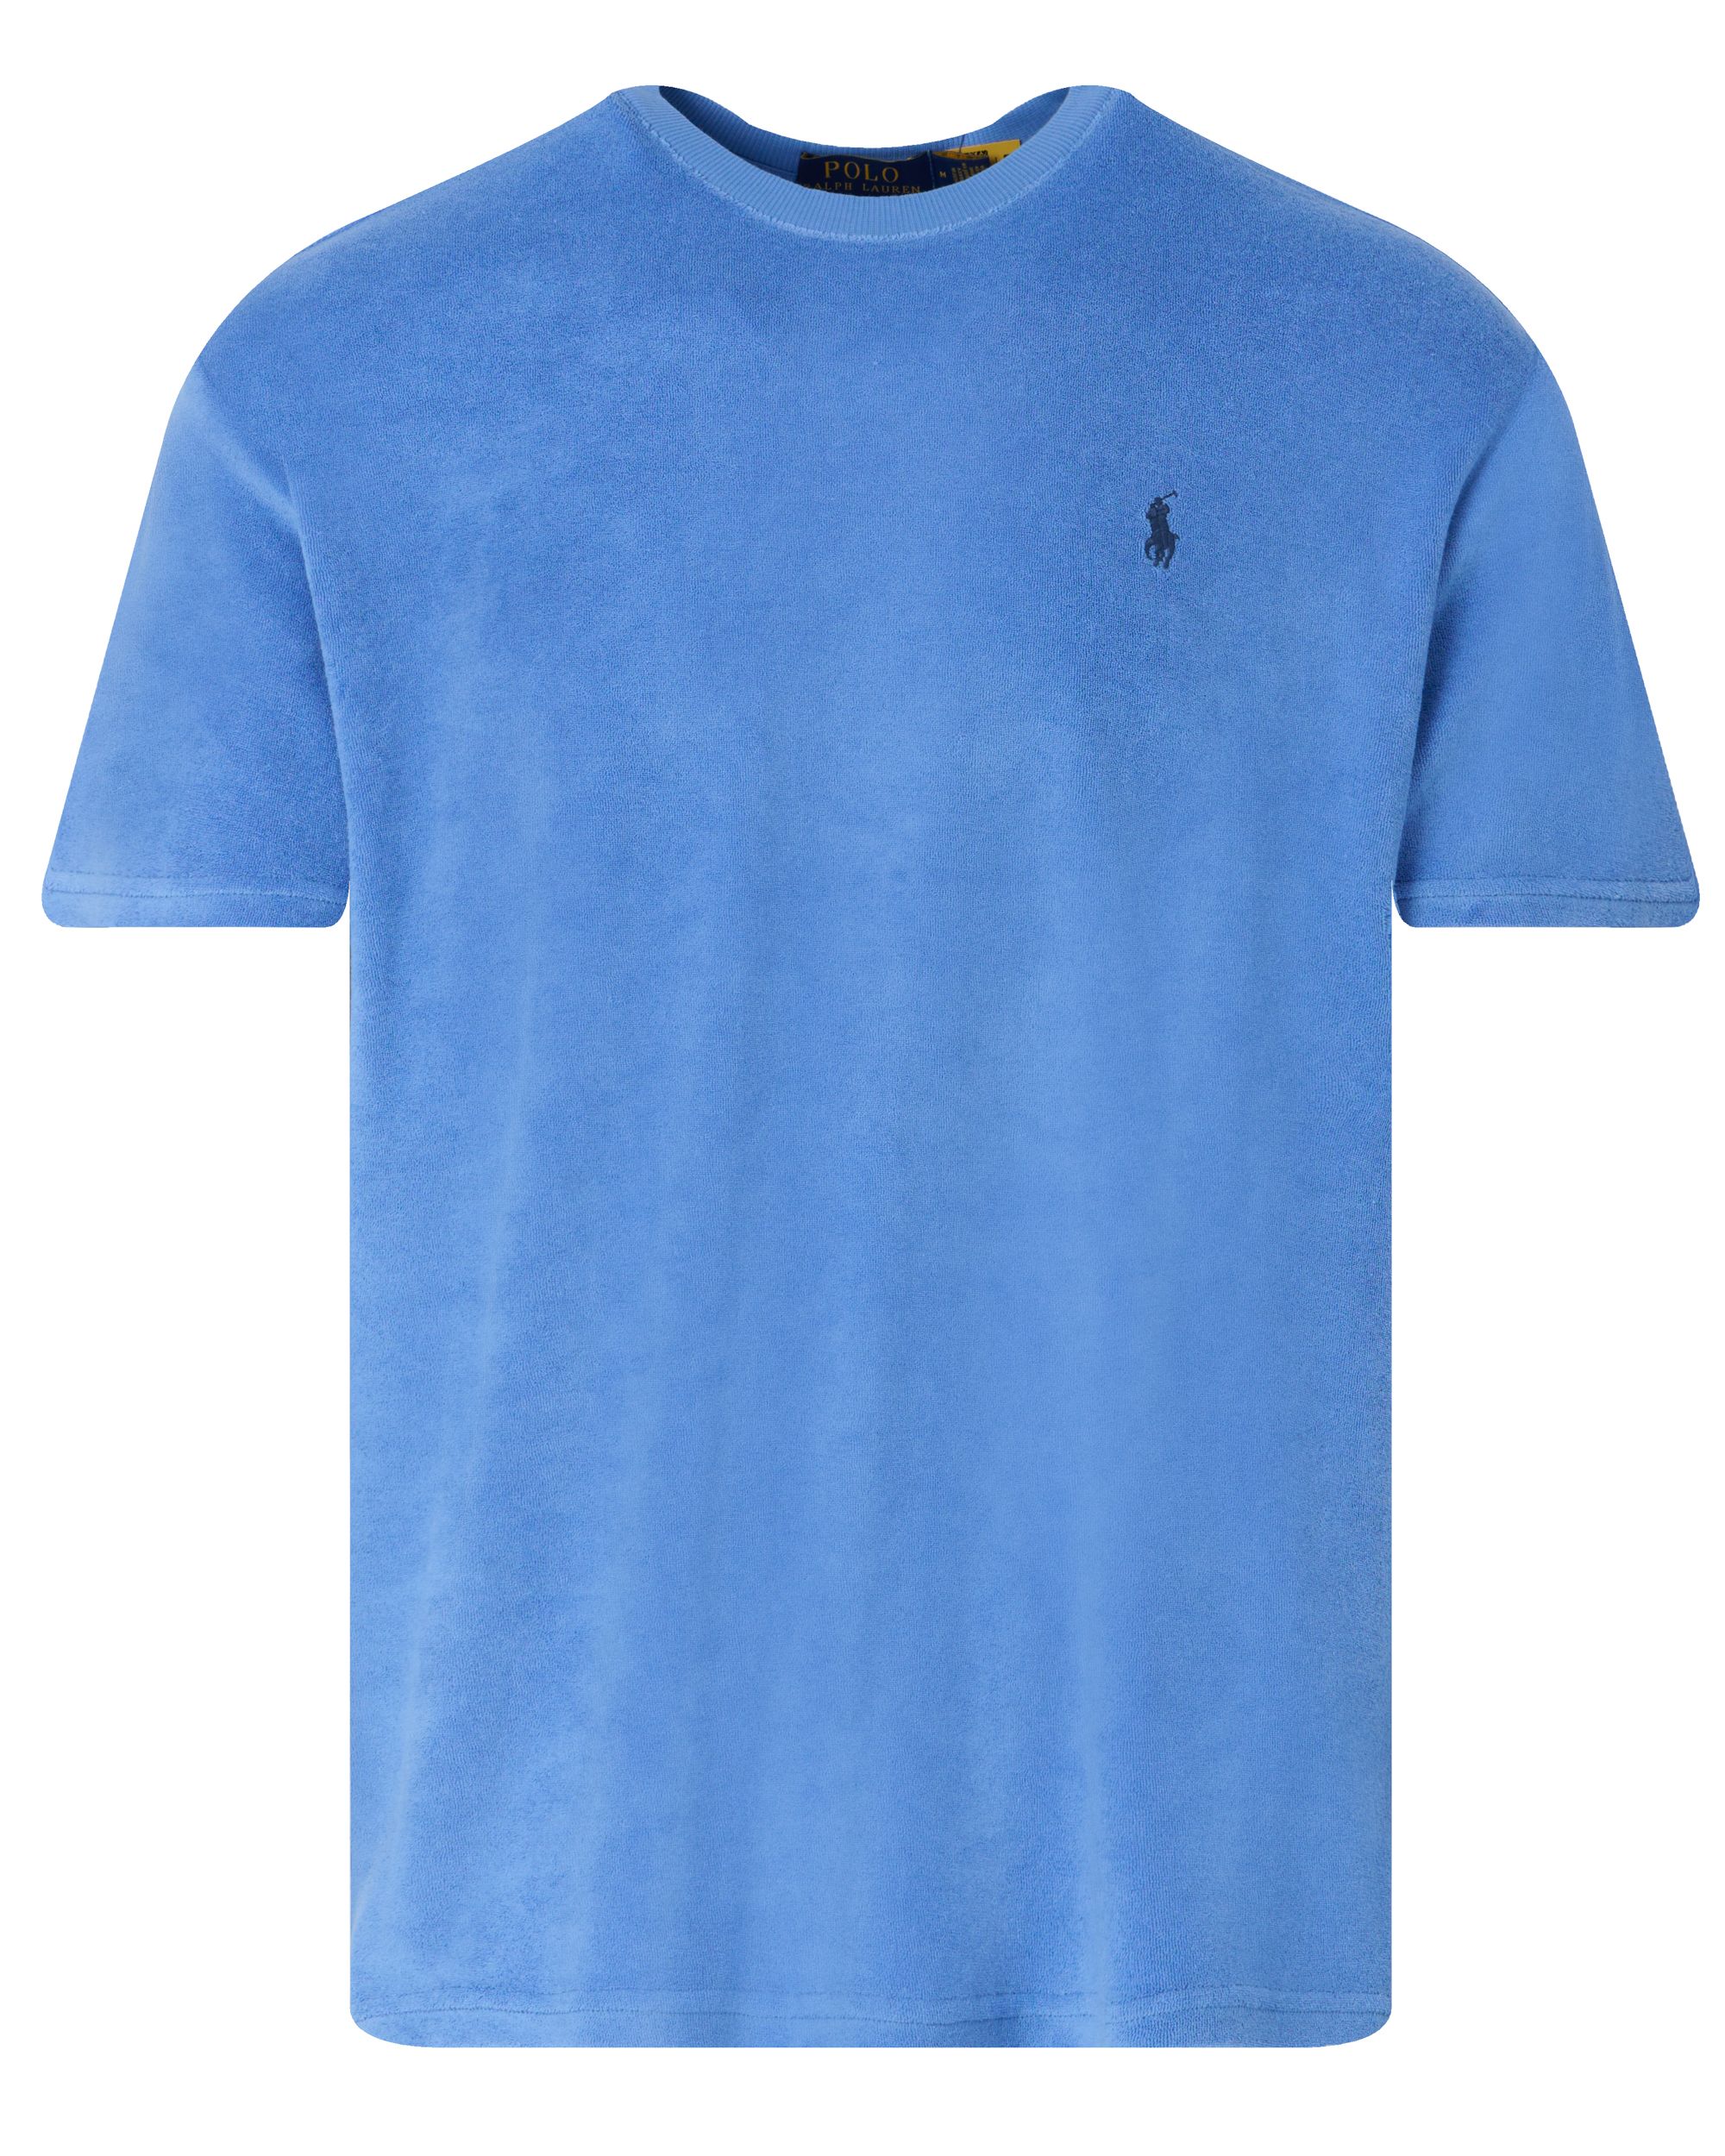 Polo Ralph Lauren T-shirt KM Blauw 095294-001-L